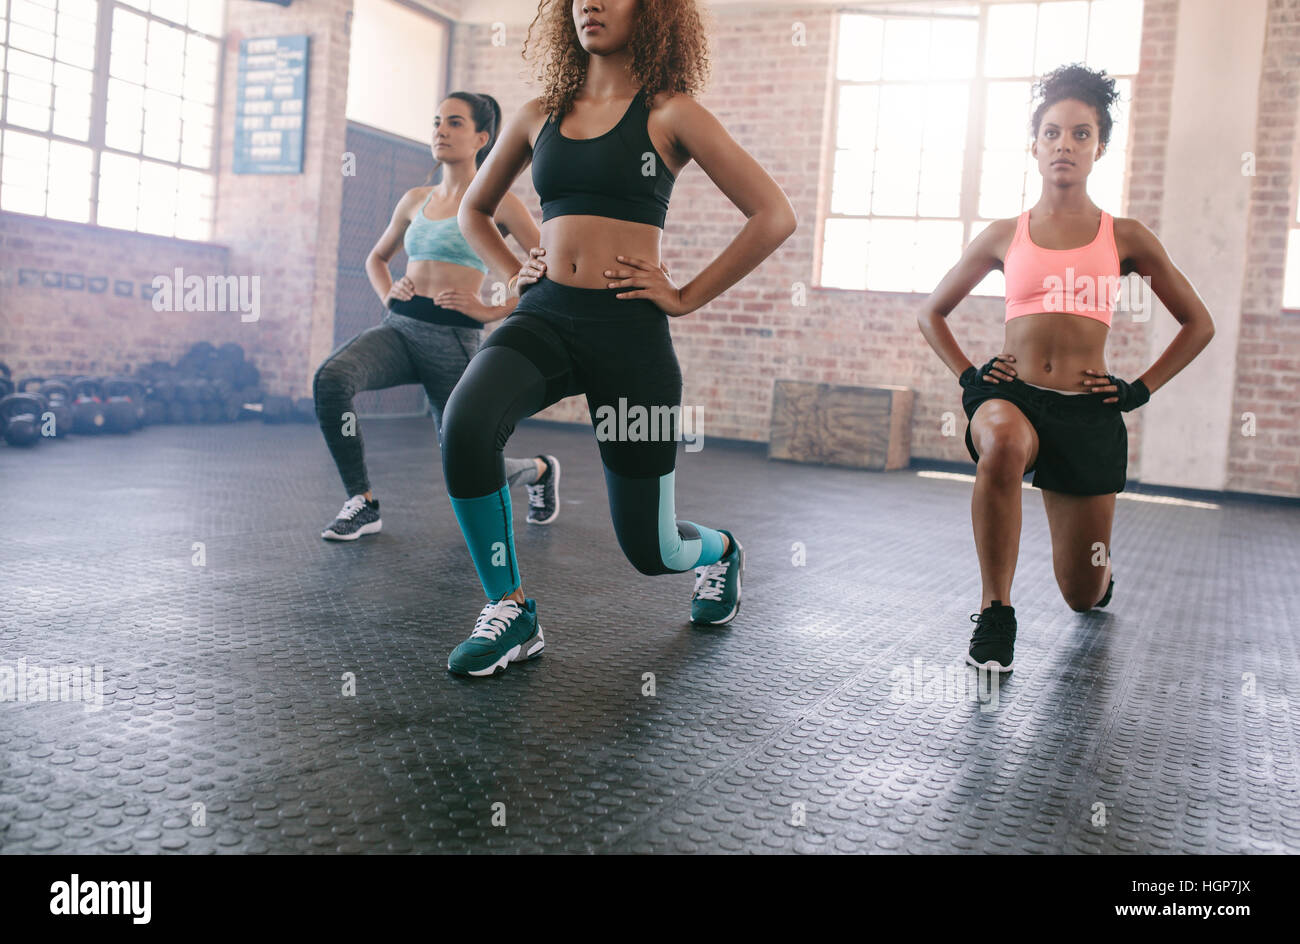 Retrato de tres jóvenes mujeres haciendo entrenar juntos en el gimnasio. Las mujeres ejercen en la clase de gimnasia. Foto de stock